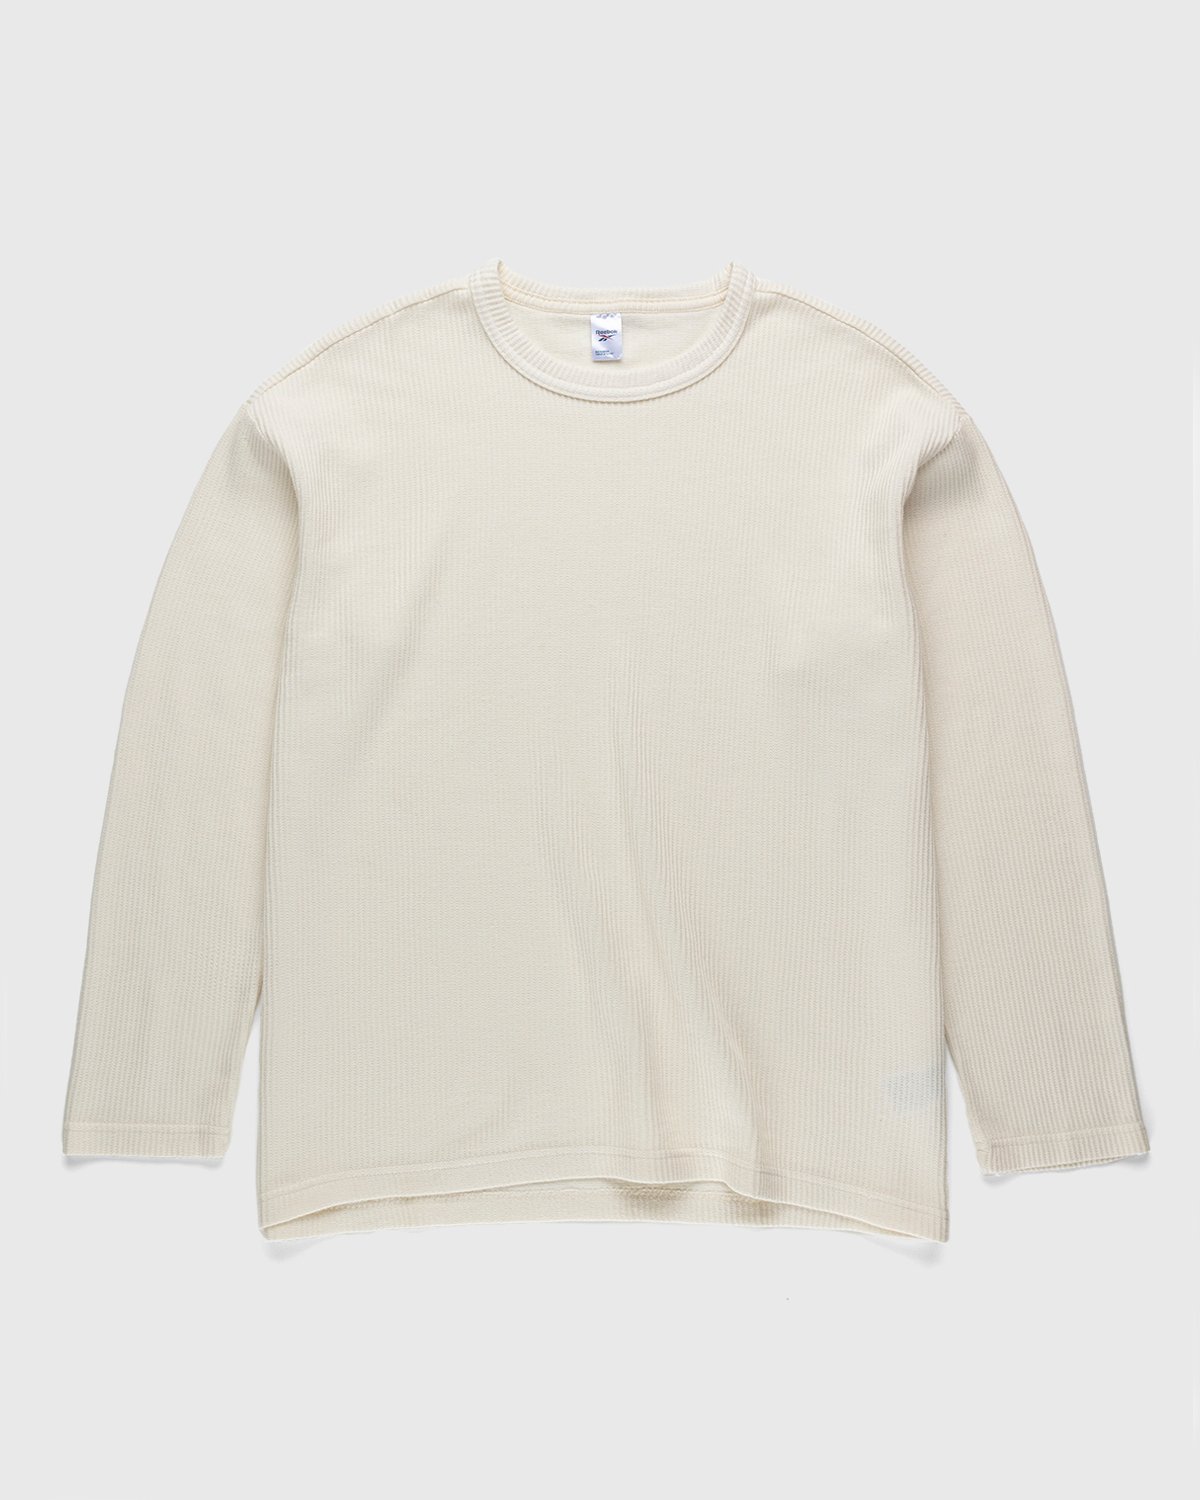 Reebok - Classics Natural Dye Waffle Crew Sweatshirt Non Dyed - Clothing - White - Image 1